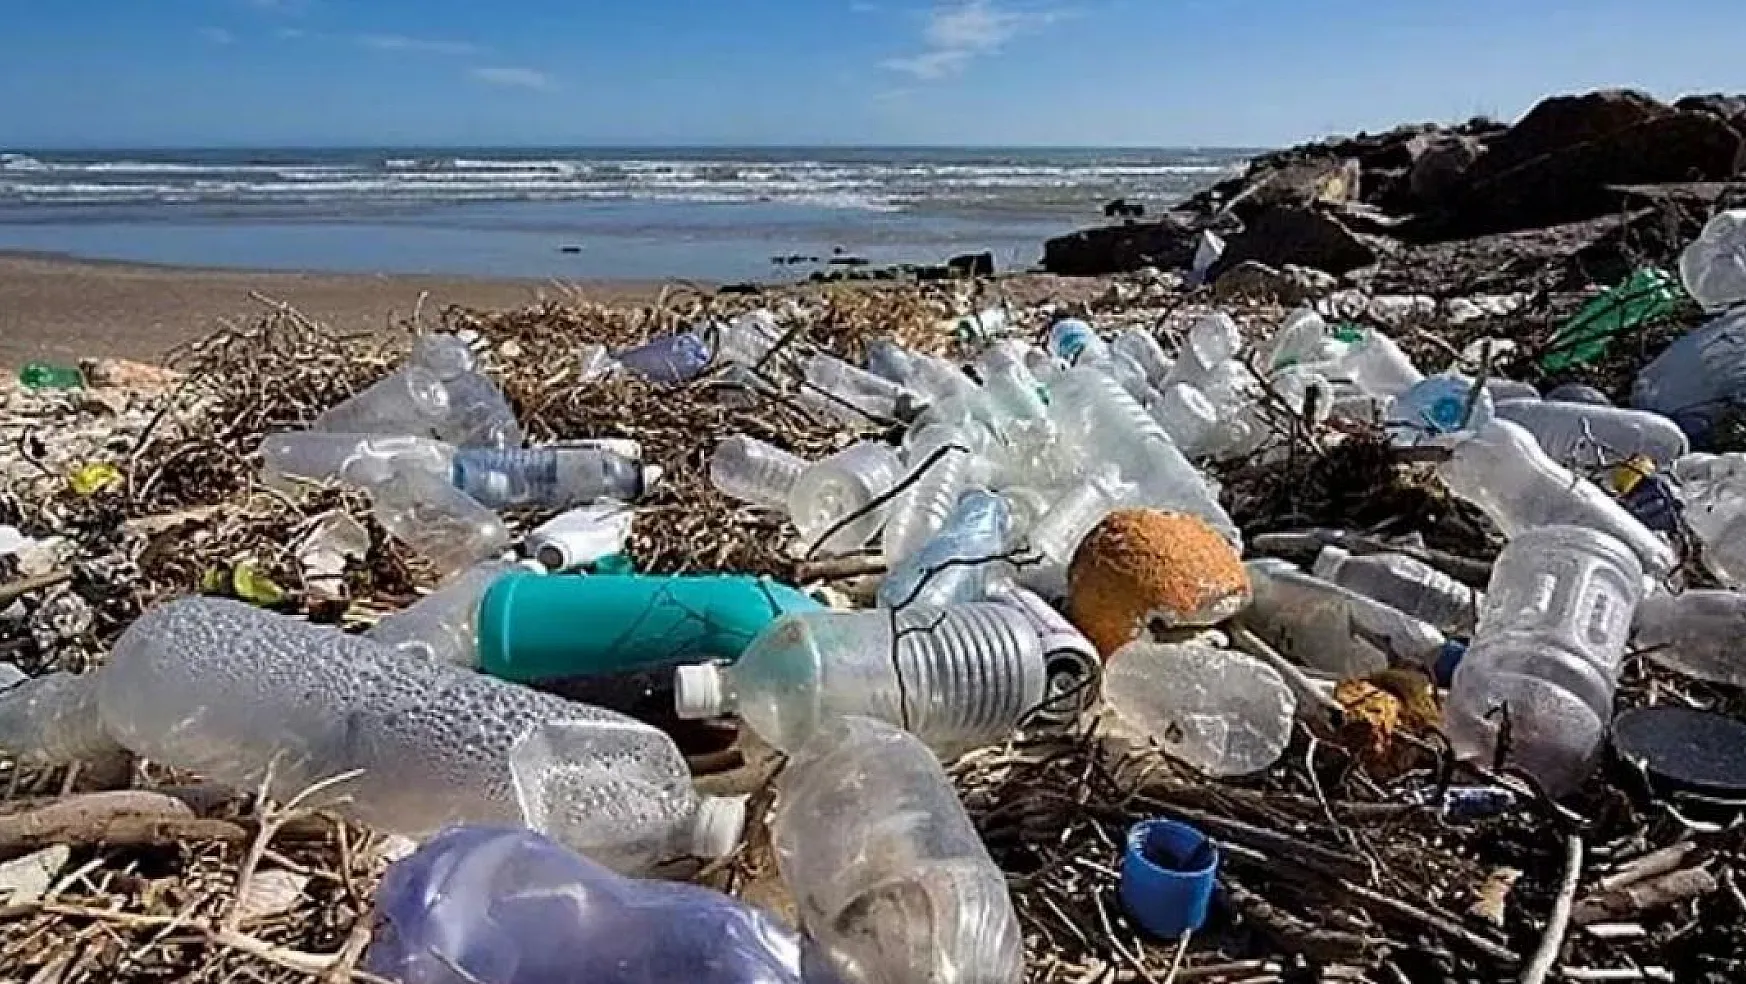 Her Gün, 2 Bin Çöp Kamyonuna Eşdeğer Plastik Sulara Atılıyor